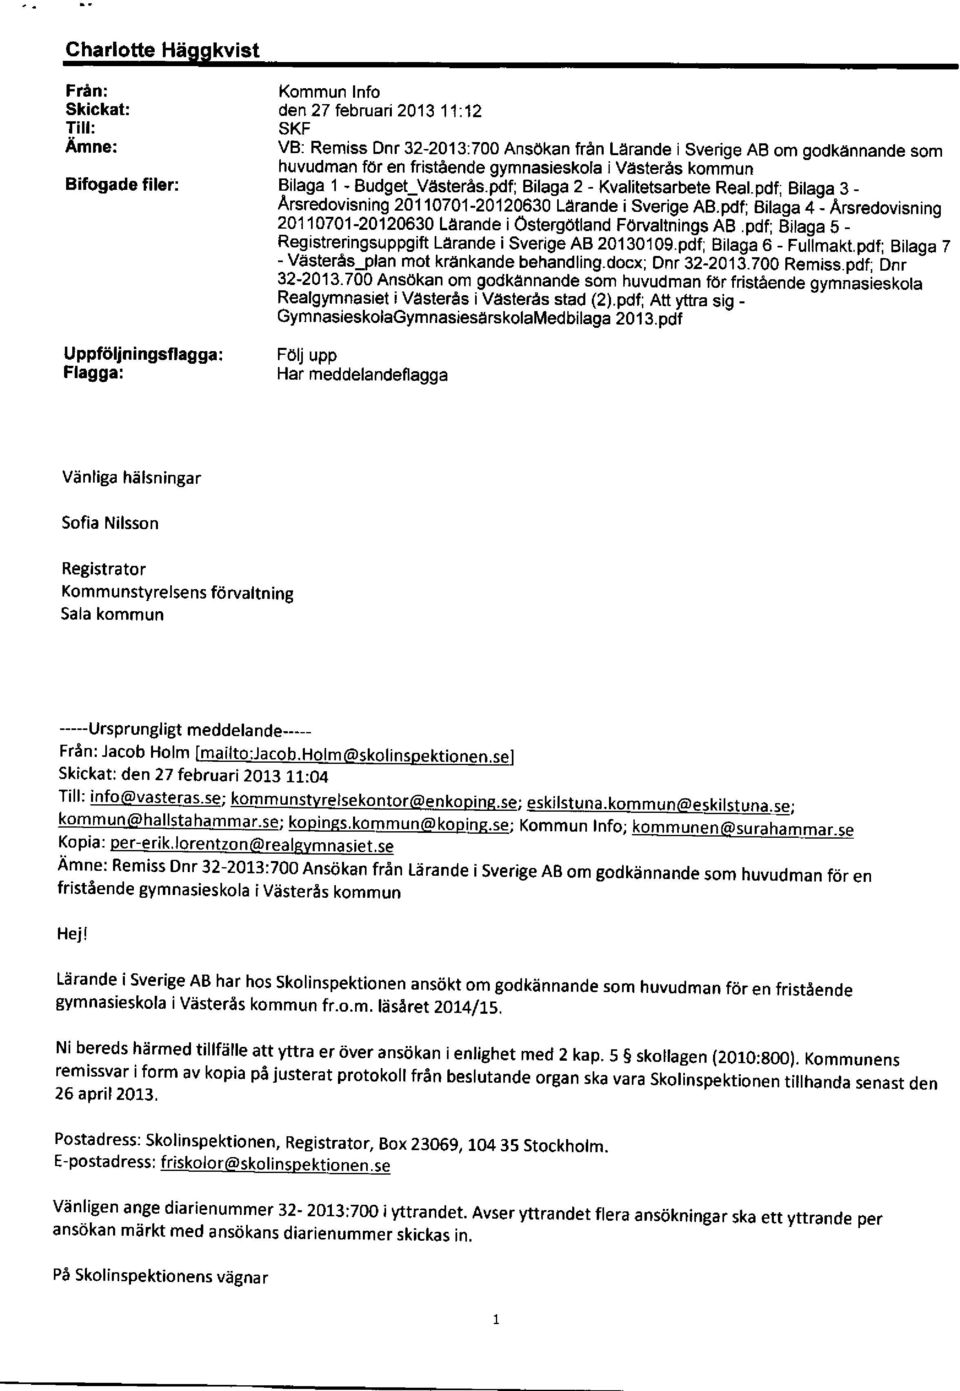 pdf; Bitaga 3 - Arsredovlsning 20110701-20120ffi0 Larande i Sverige AB.pdf; Bilaga 4 - Arsredovisning 20110701-20120630 Larande i Ostergottand Forvattnings AB.